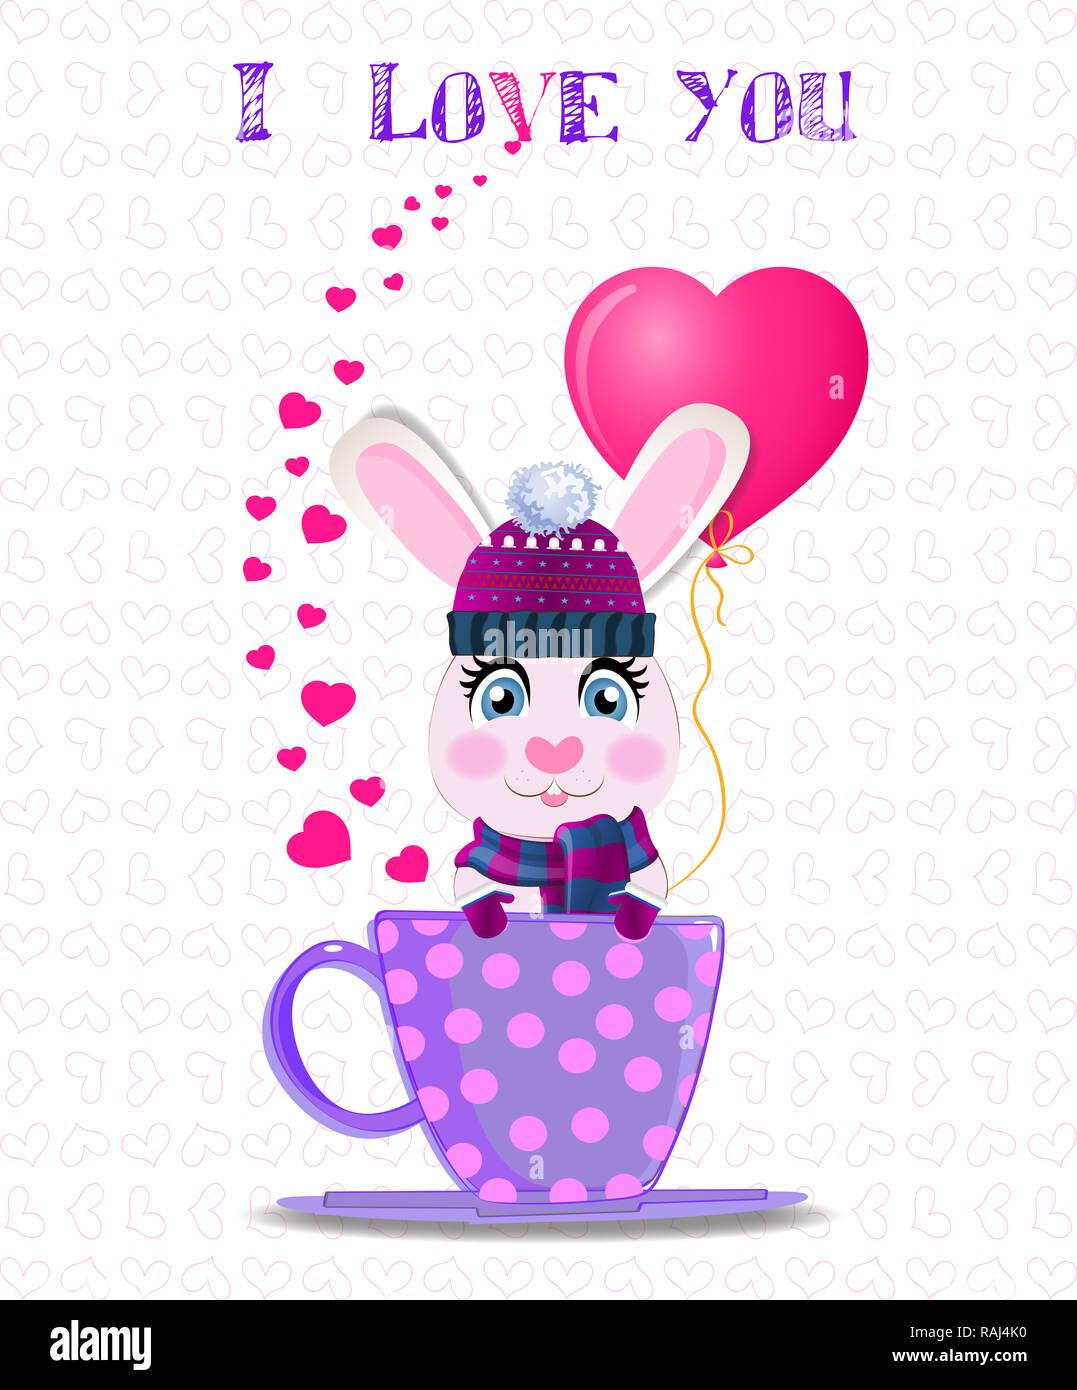 Carte de souhaits avec cute cartoon lapin en violet bonnet, écharpe en tricot et mitaines holding ballon coeur rose lilas, assis dans la tasse à pois et t Banque D'Images